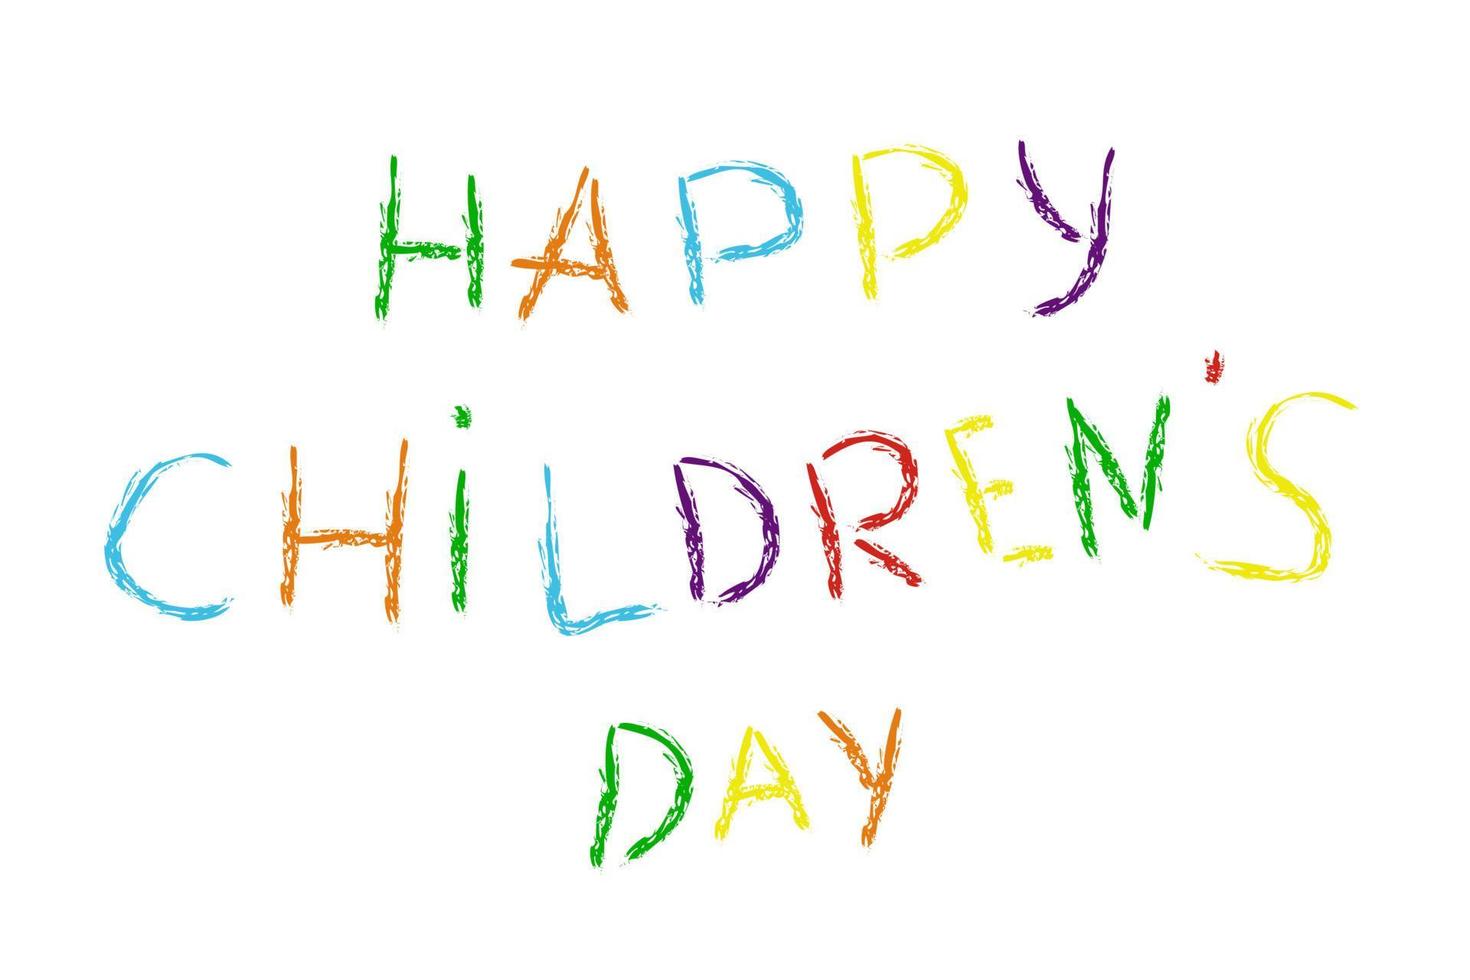 letras coloridas feliz dia das crianças com efeito de giz no estilo cartoon. vetor